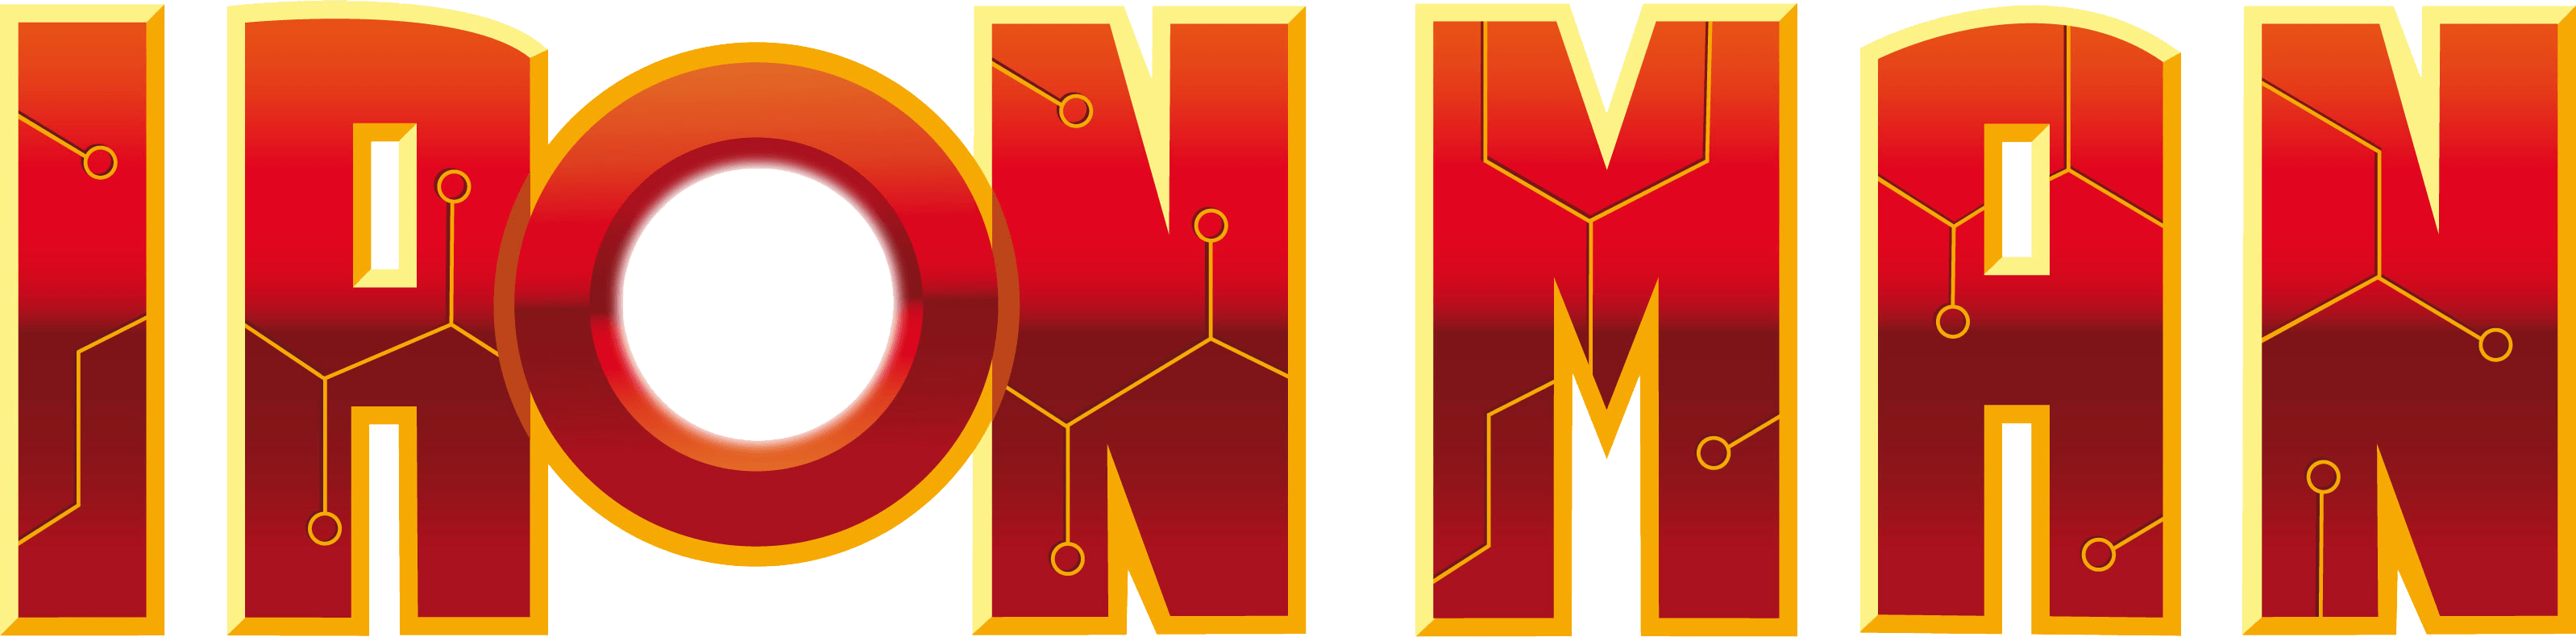 Iron Man 3 Logo - Ironman PNG images free download